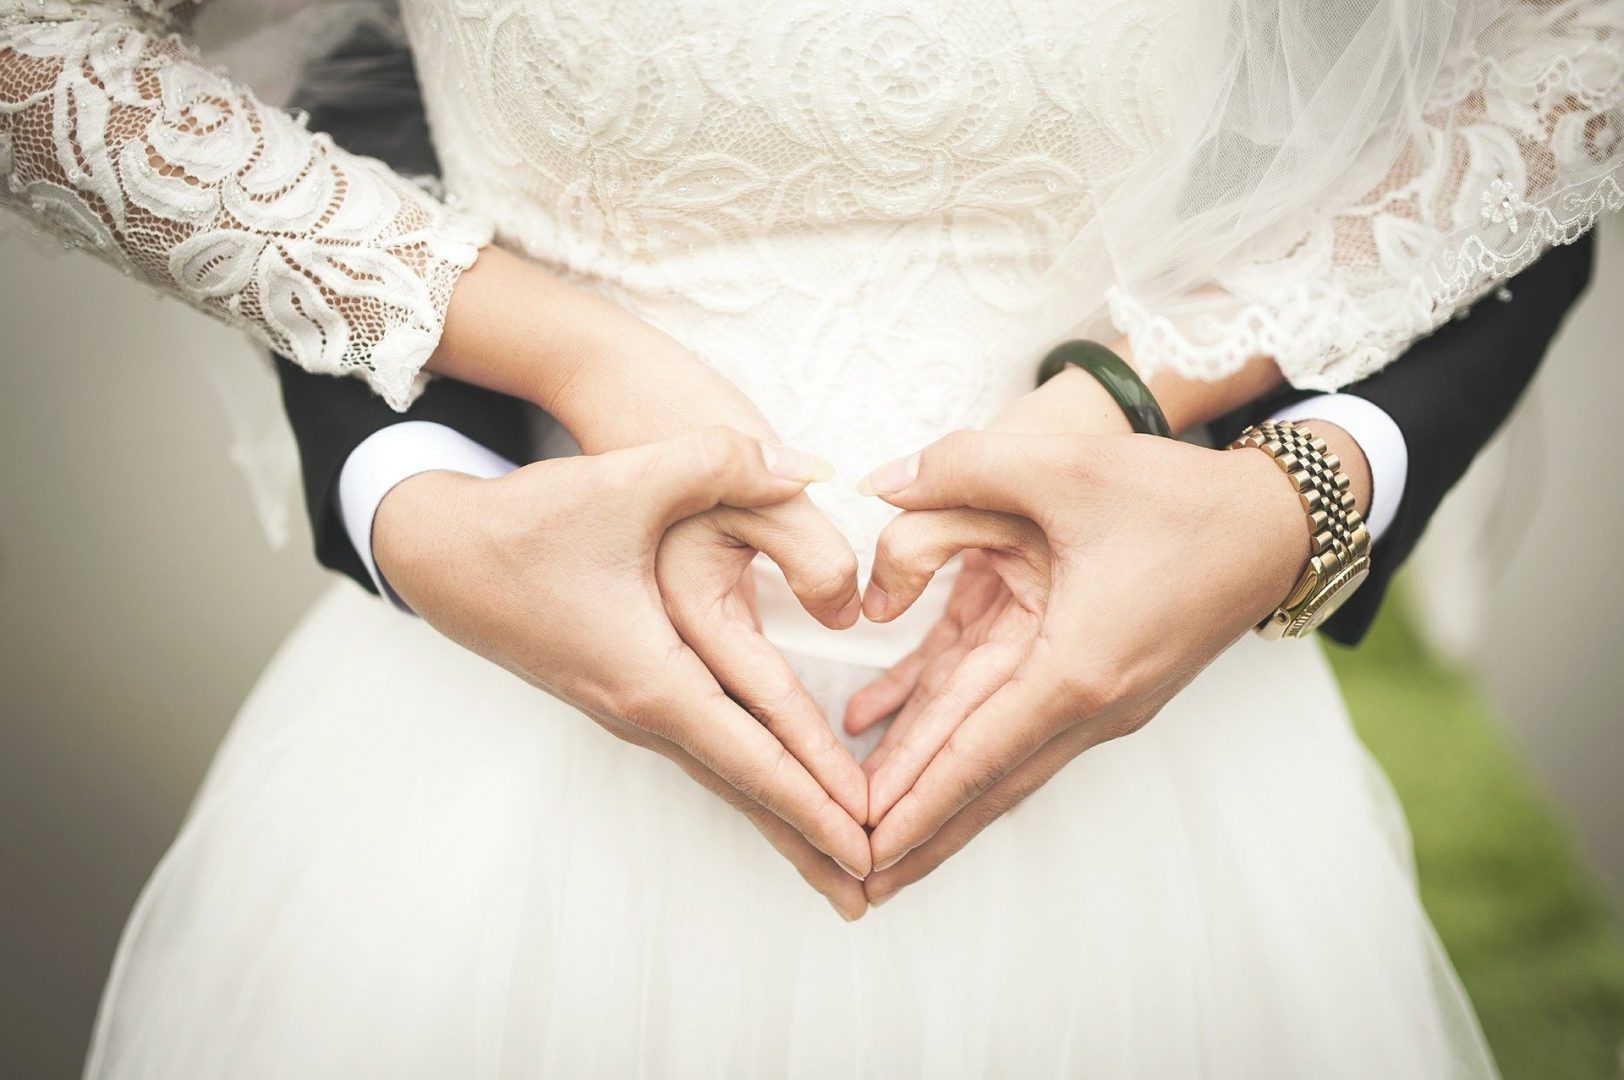 Москвичи смогут зарегистрировать брак в усадьбе Валуево в Новой Москве. Фото: pixabay.com